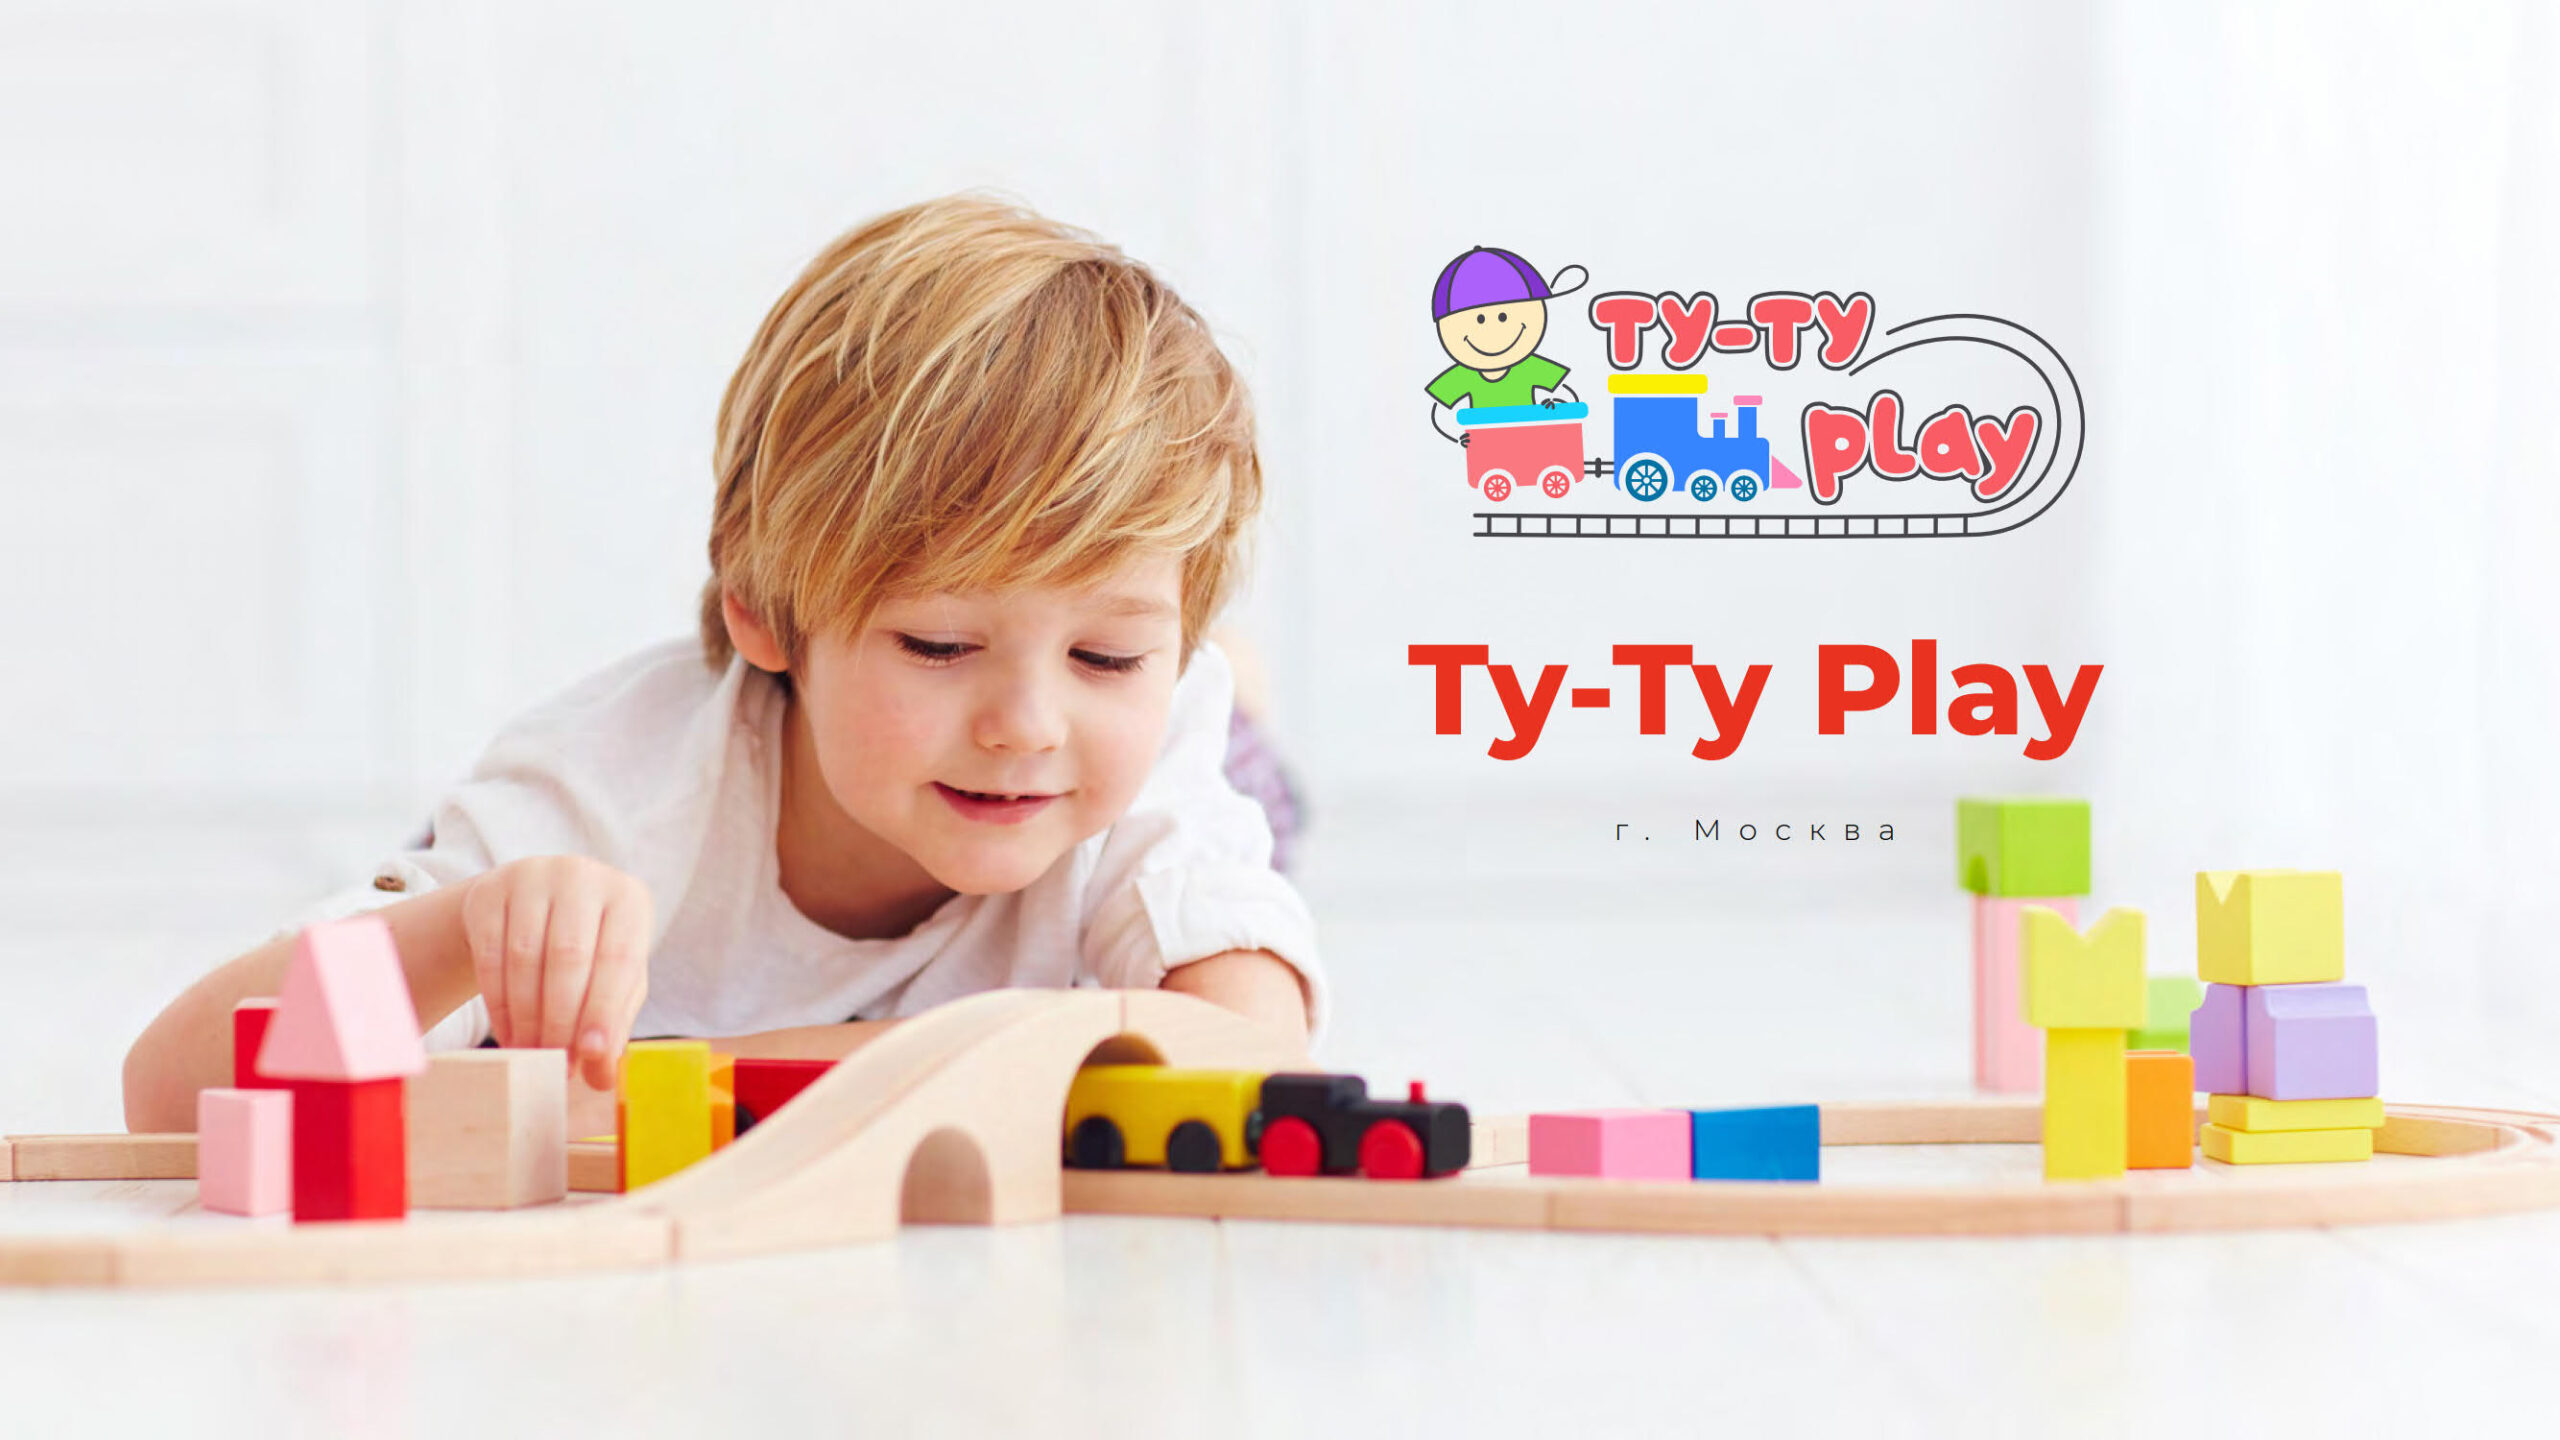 Презентация детского игрового островка «Ту-Ту Play» для ТРЦ слайд 1